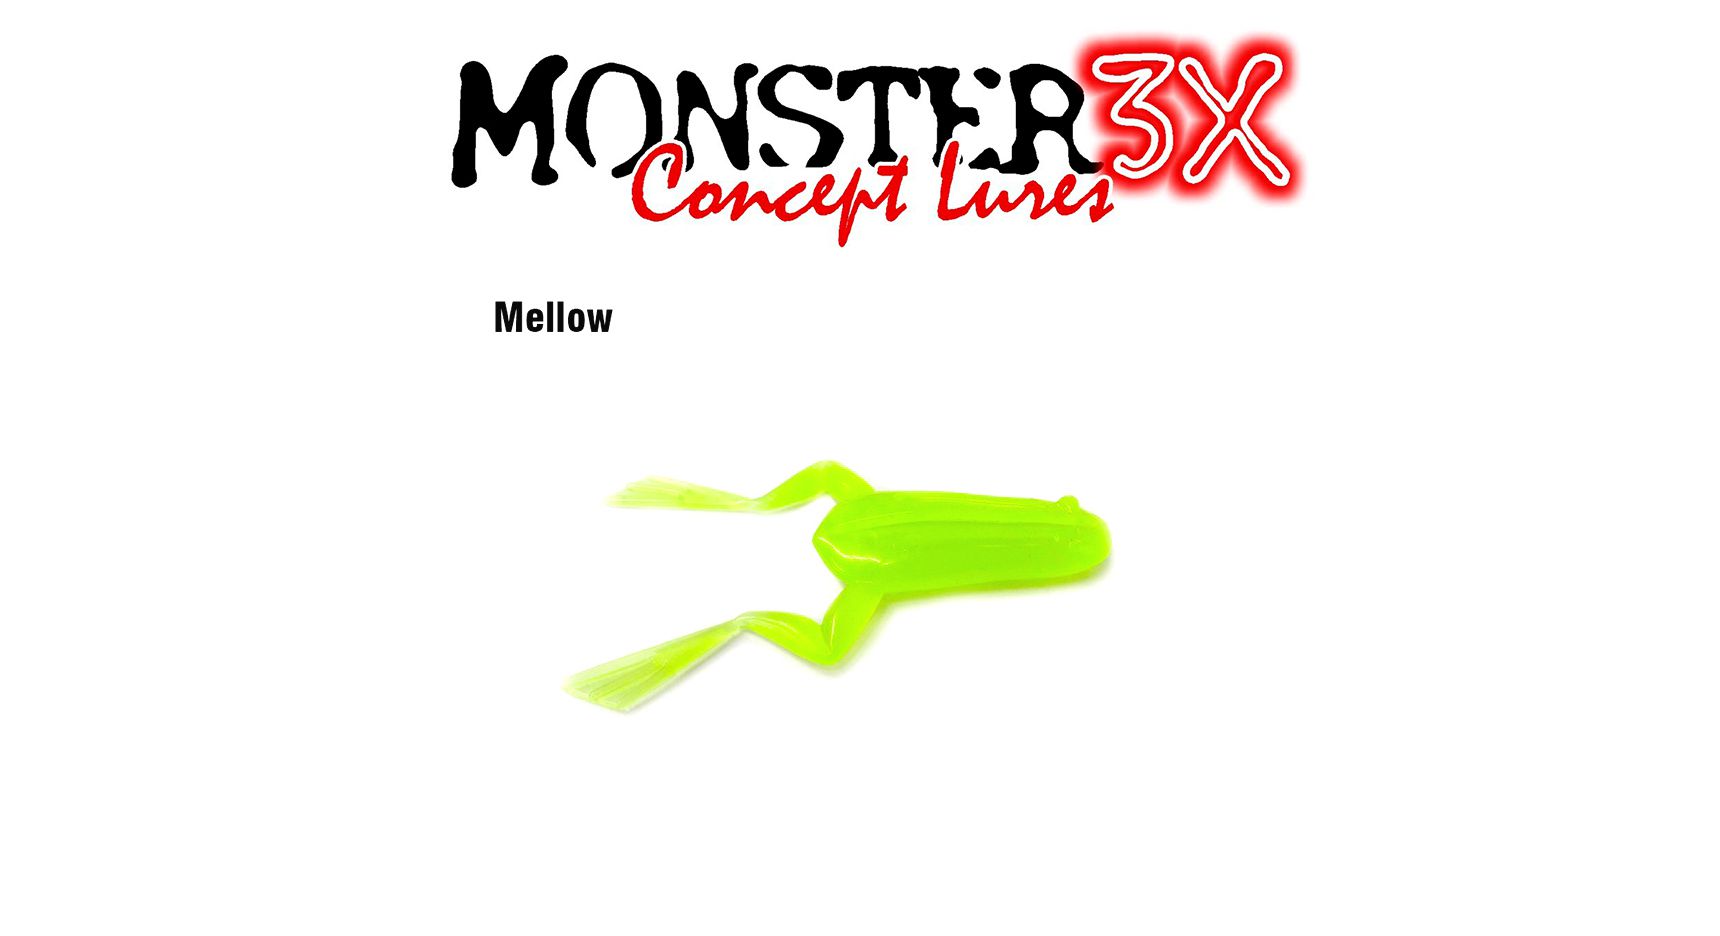 Isca Artificial Soft Monster 3X X-Frog (9cm) 2 Unidades - Várias Cores - Life Pesca - Sua loja de Pesca, Camping e Lazer